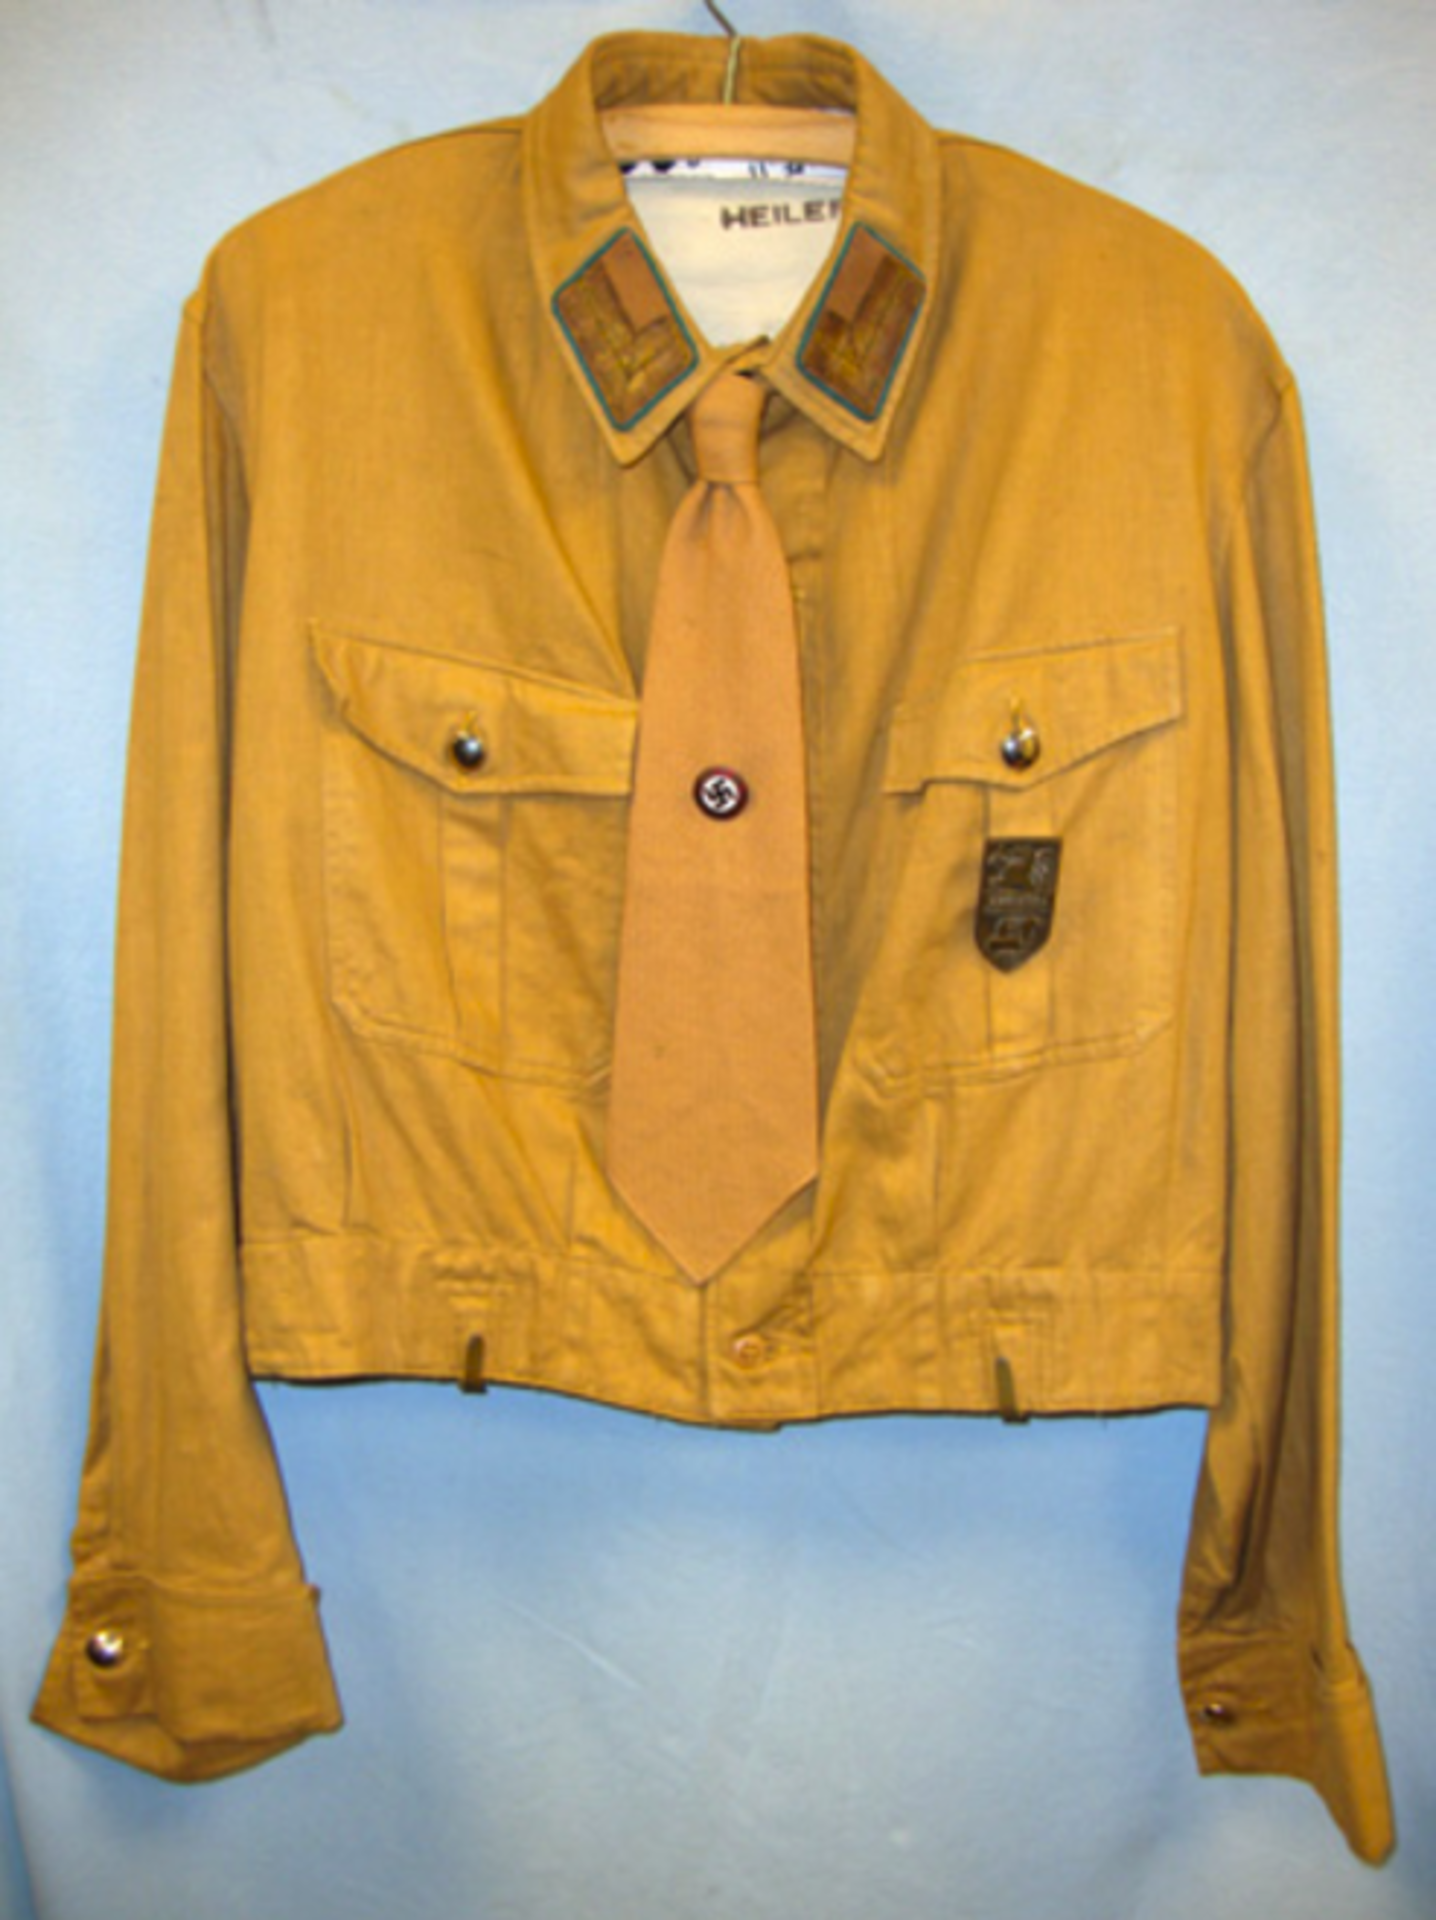 Nazi 1934-1939 NSDAP Zellenleiter (Cell Leader's) Shirt/ Short Jacket With Collar Insignia, Metal